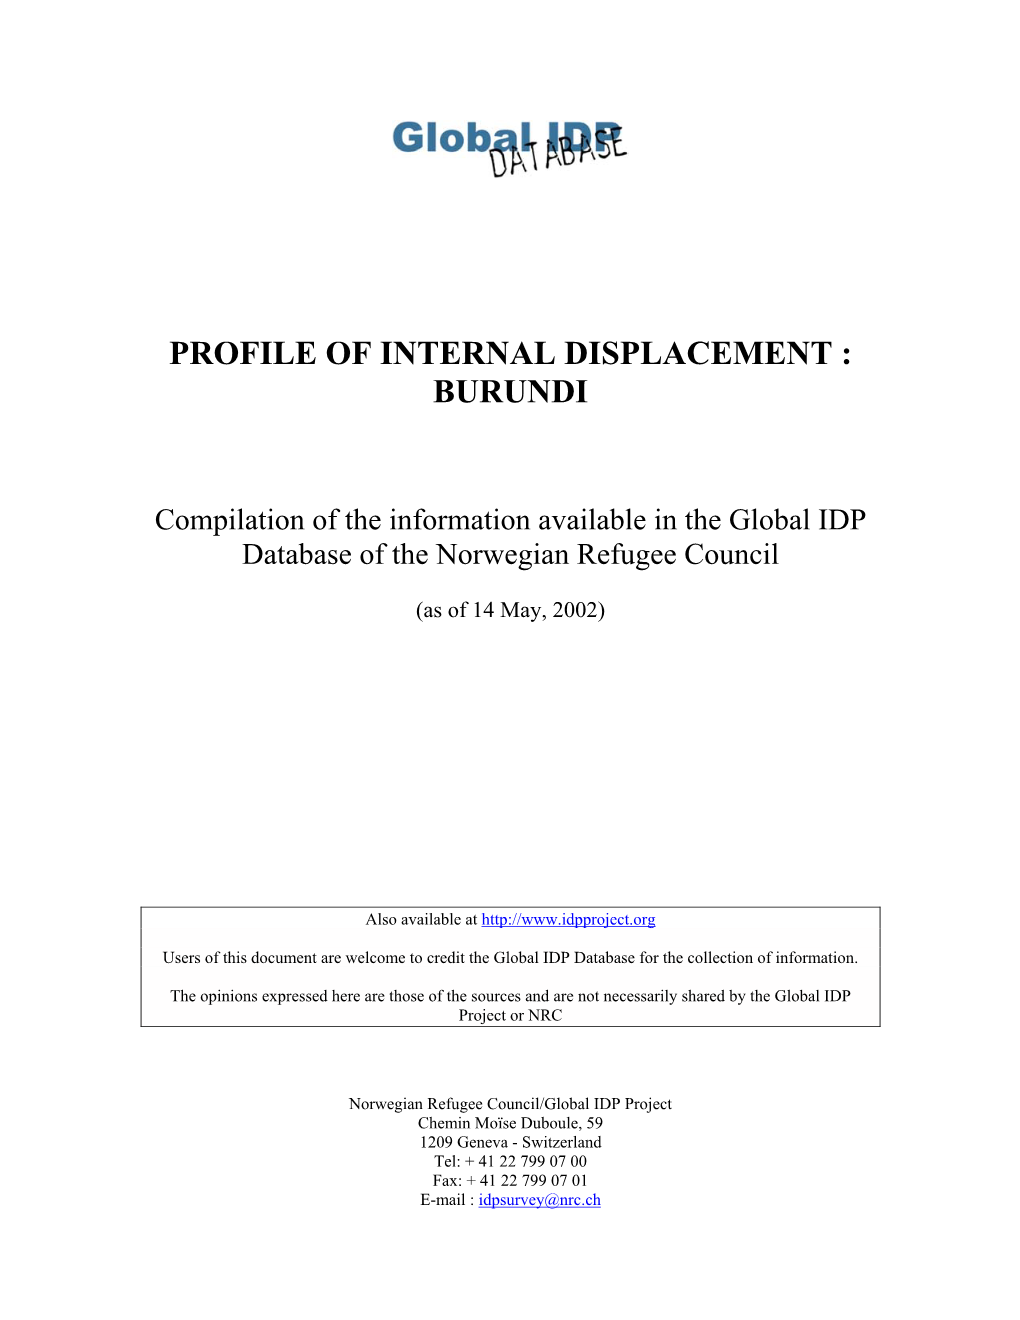 Profile of Internal Displacement : Burundi